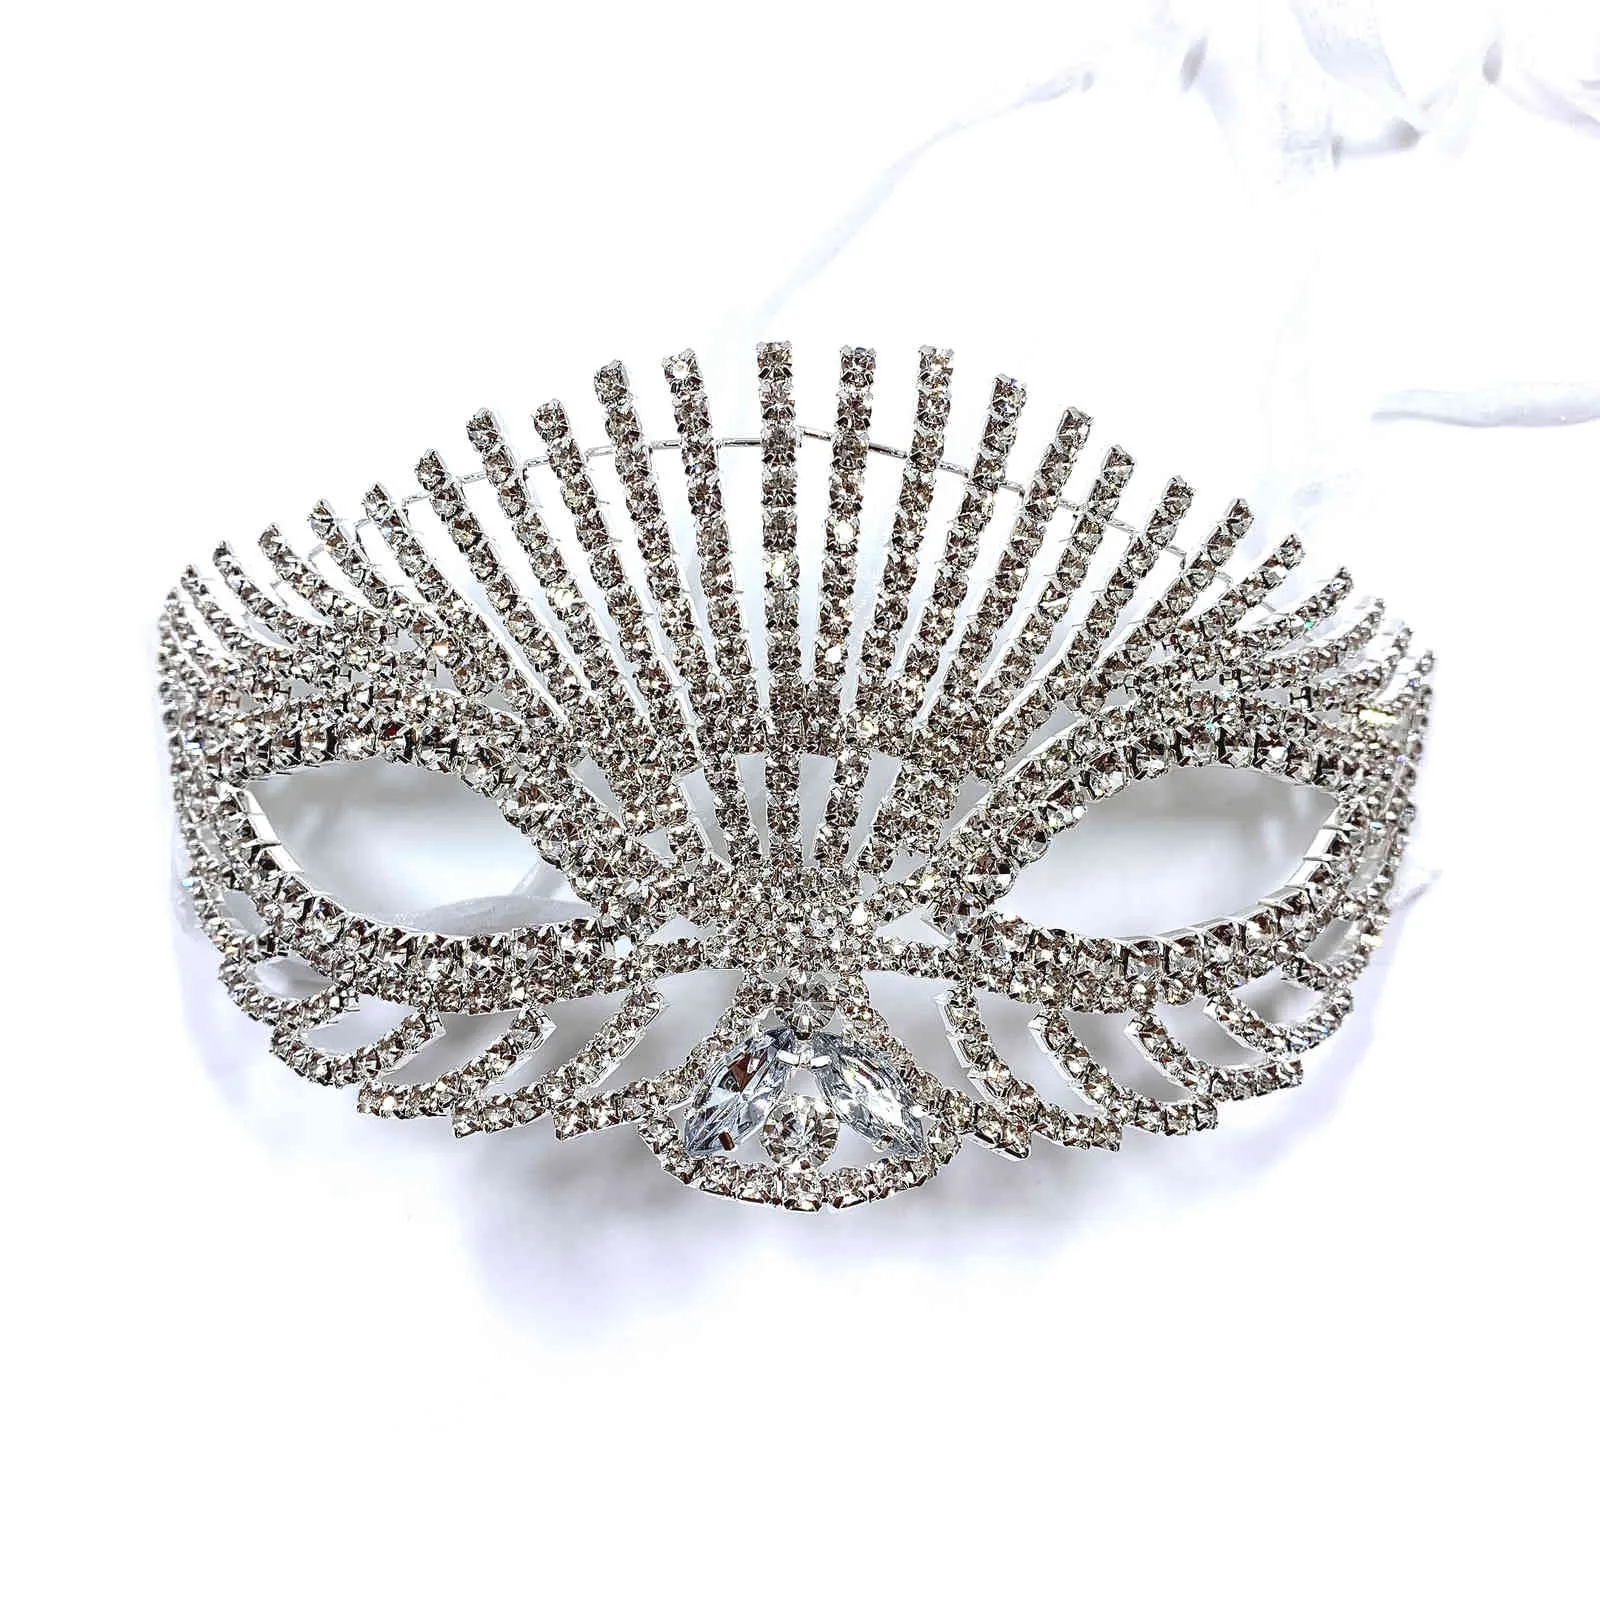 Lüks Moda Kadın Maske Noble ve Zarif Mizaç Yüz Takı Aksesuarları Rhinestone Kristal Parlak Kız Maskeleri